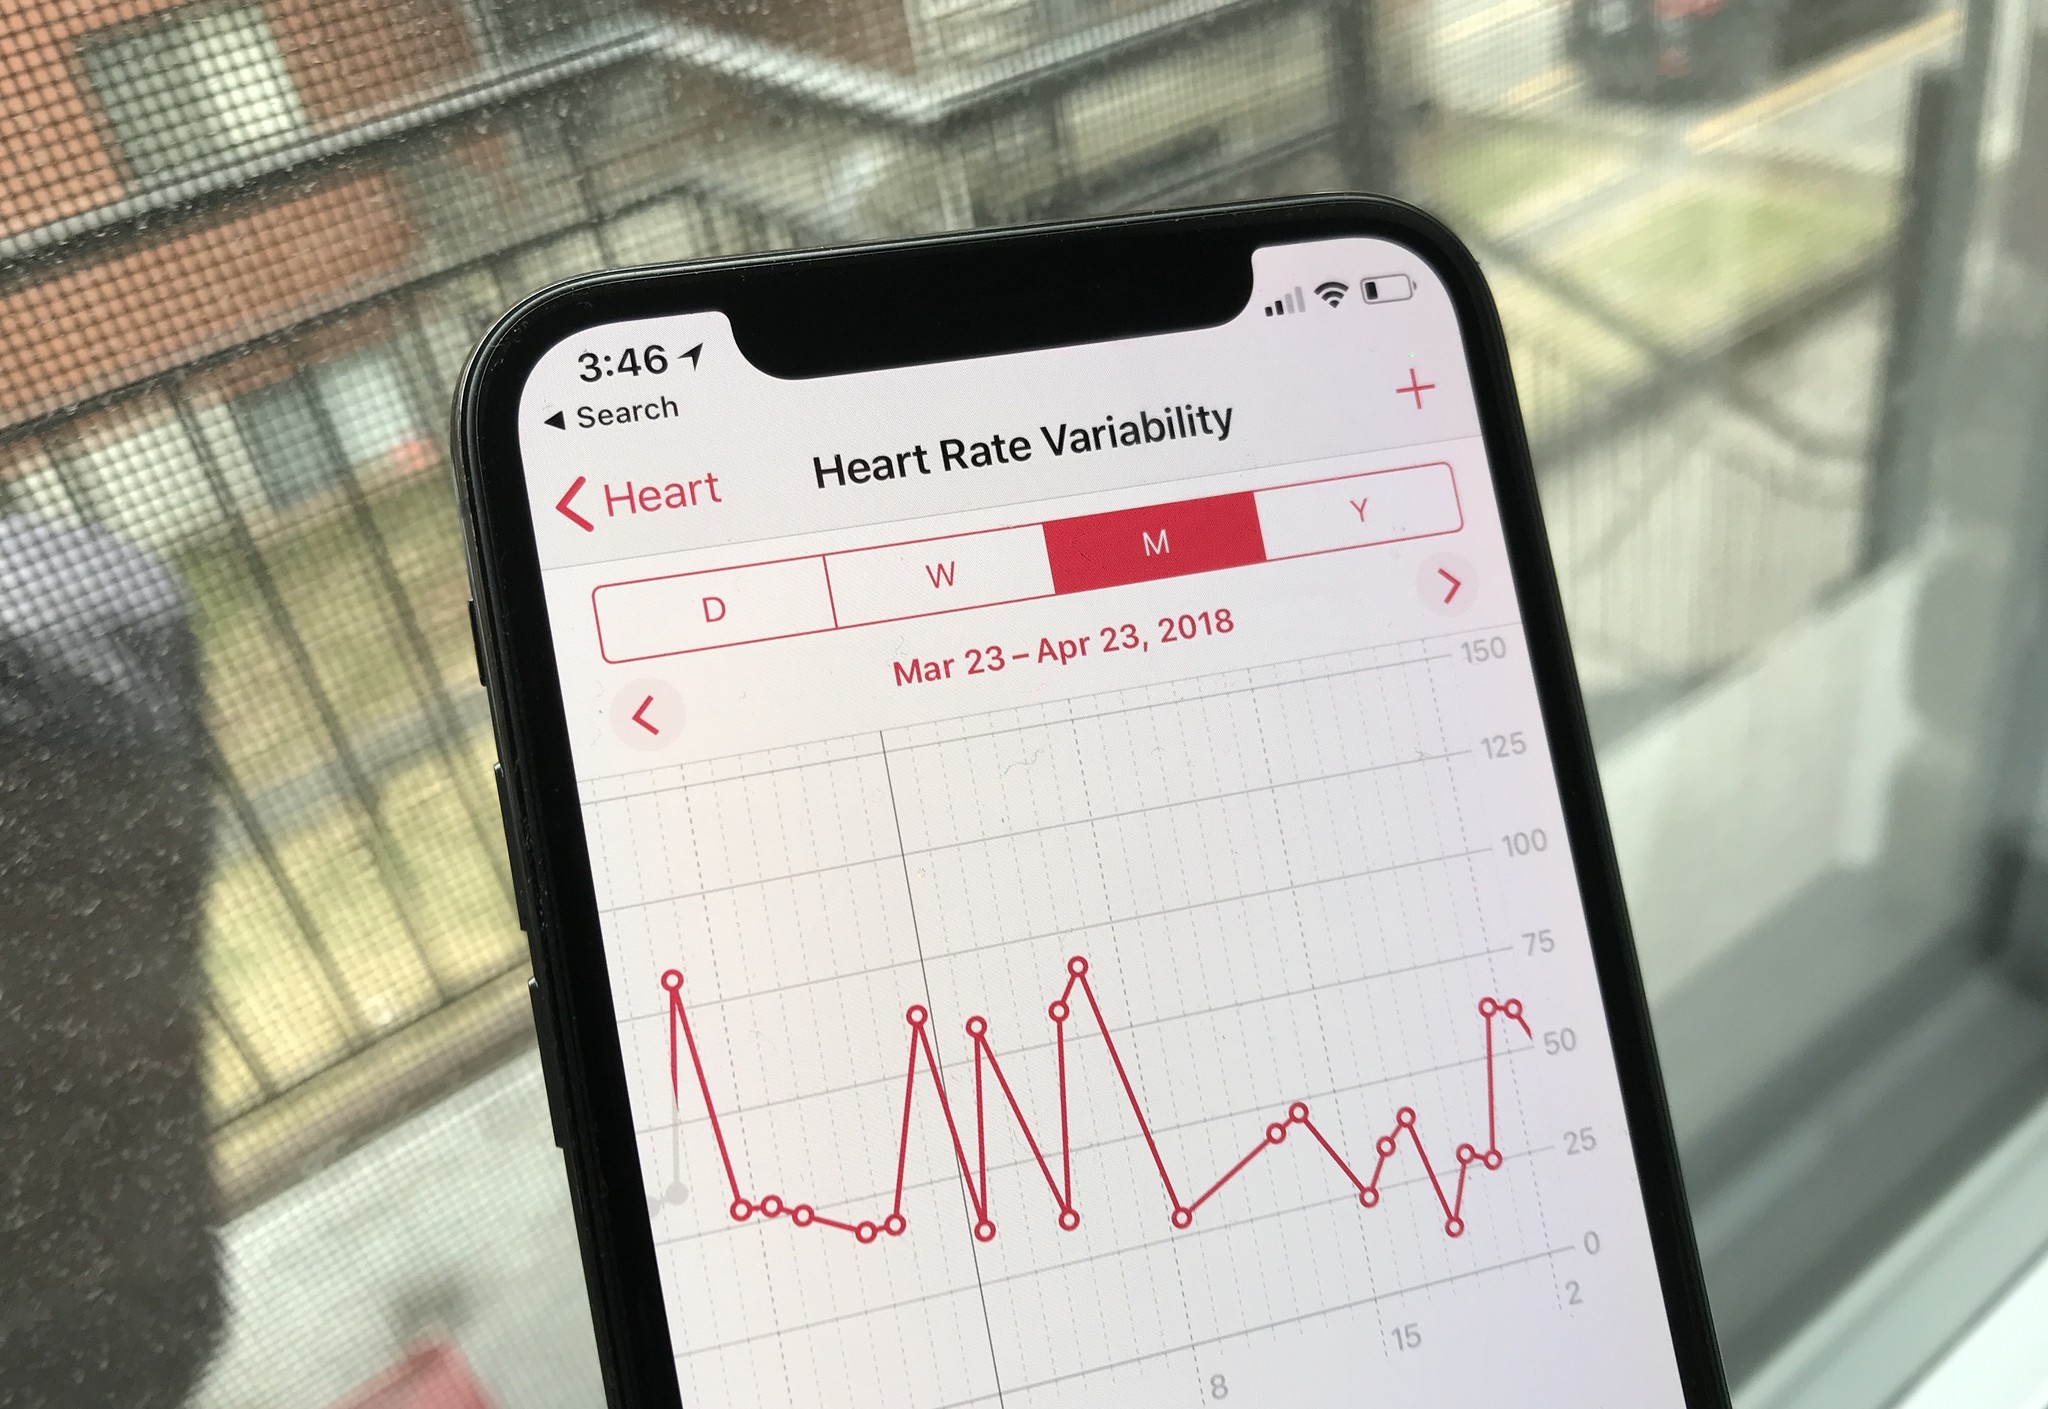 heartbeat calculator app